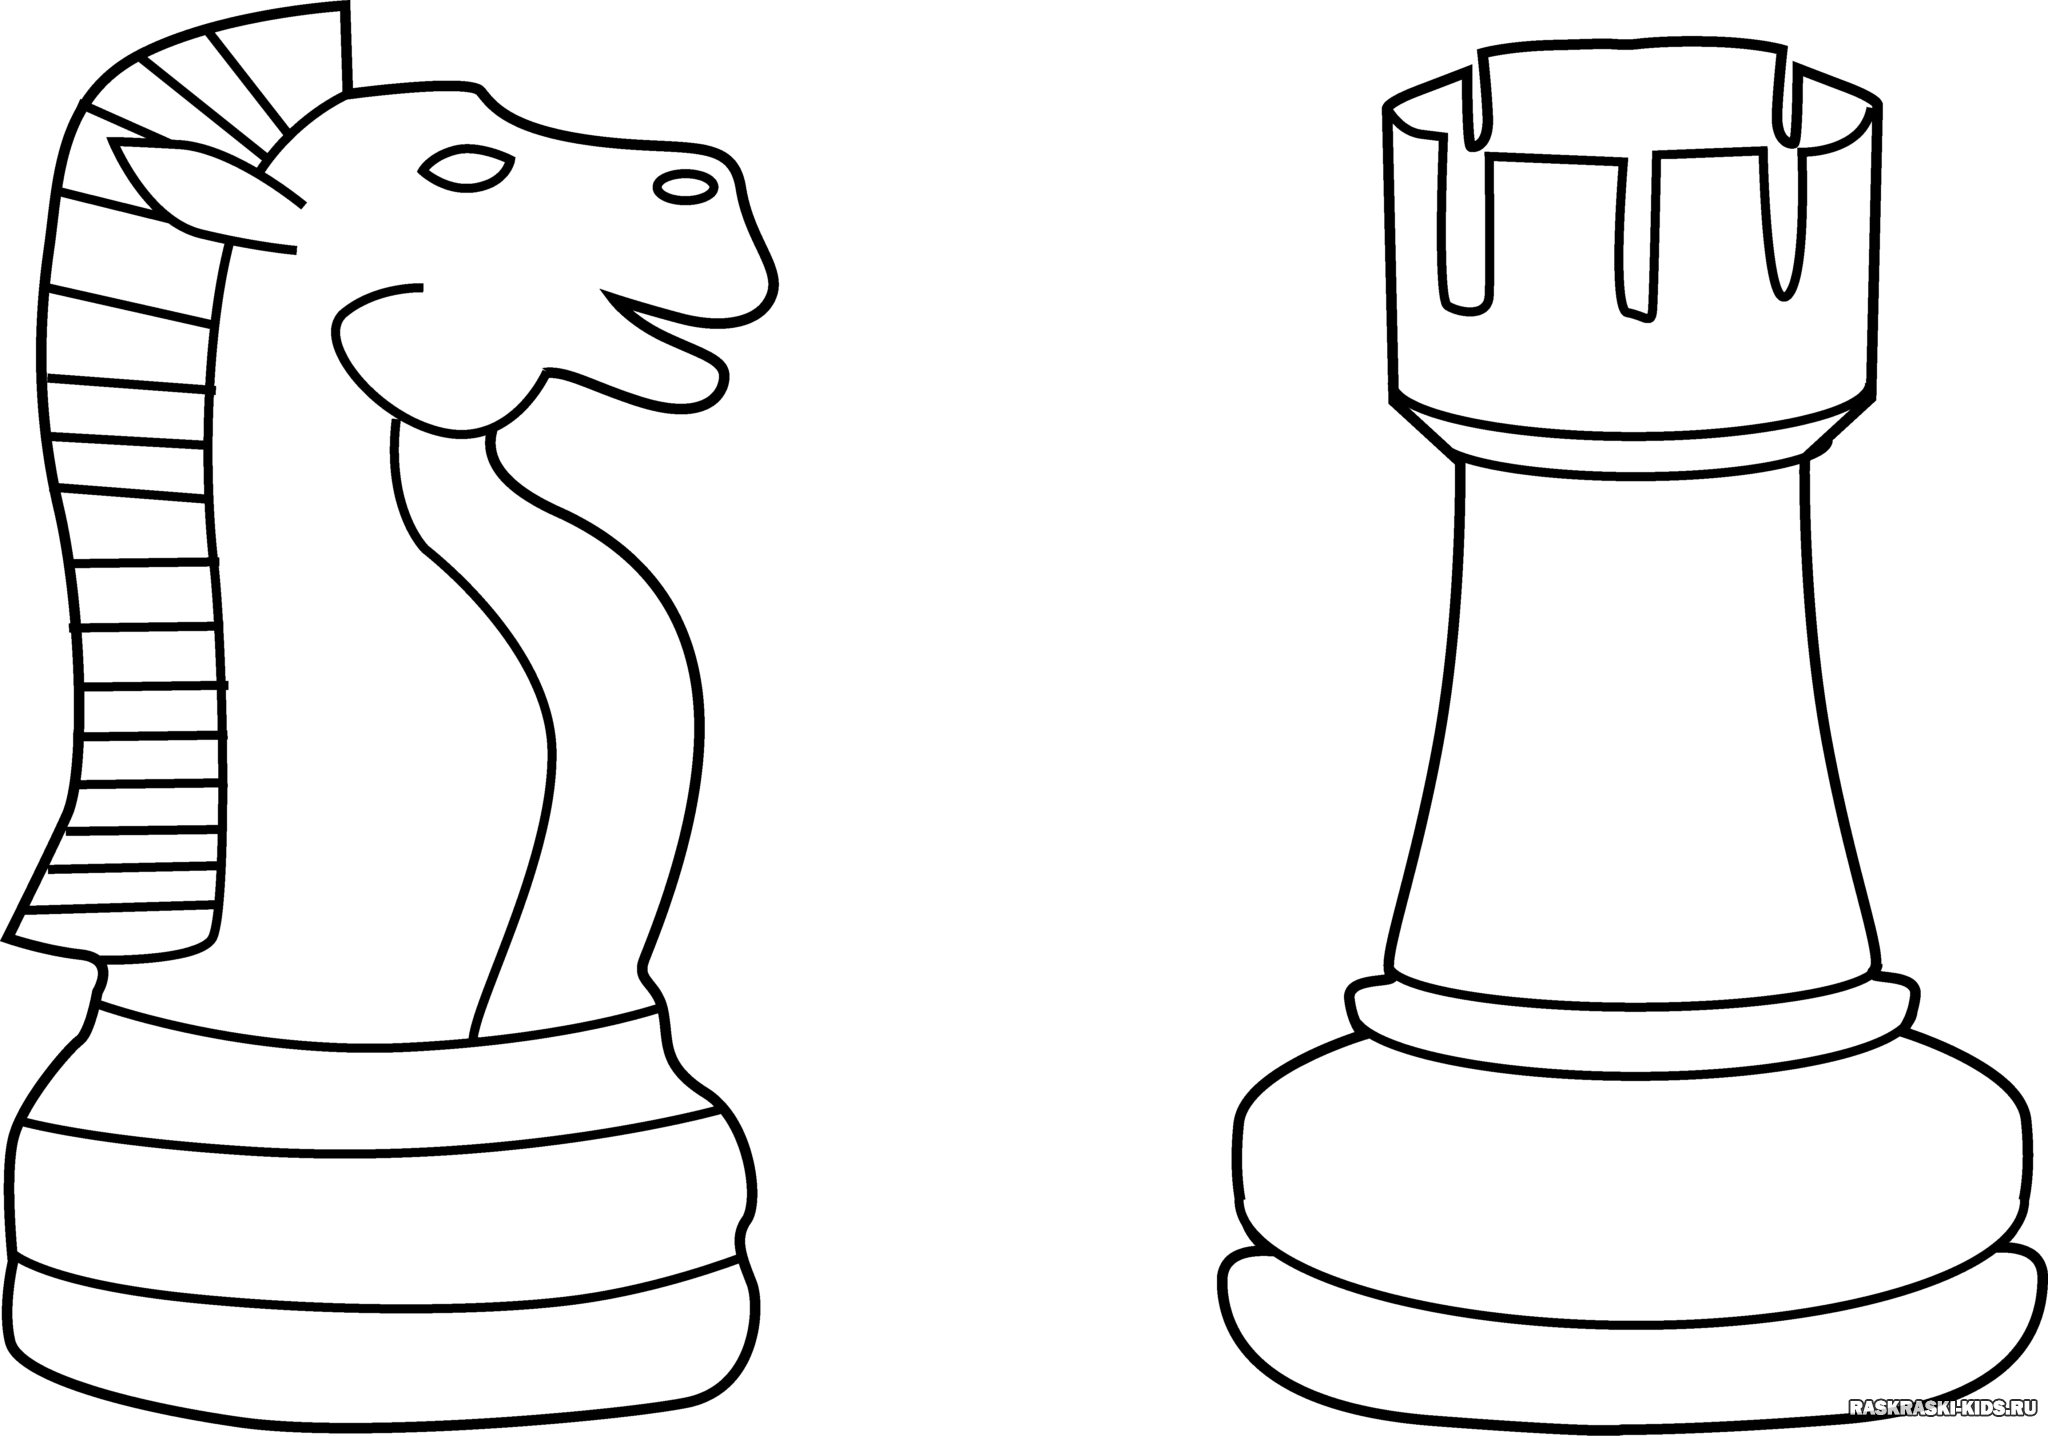 Colocación fichas ajedrez